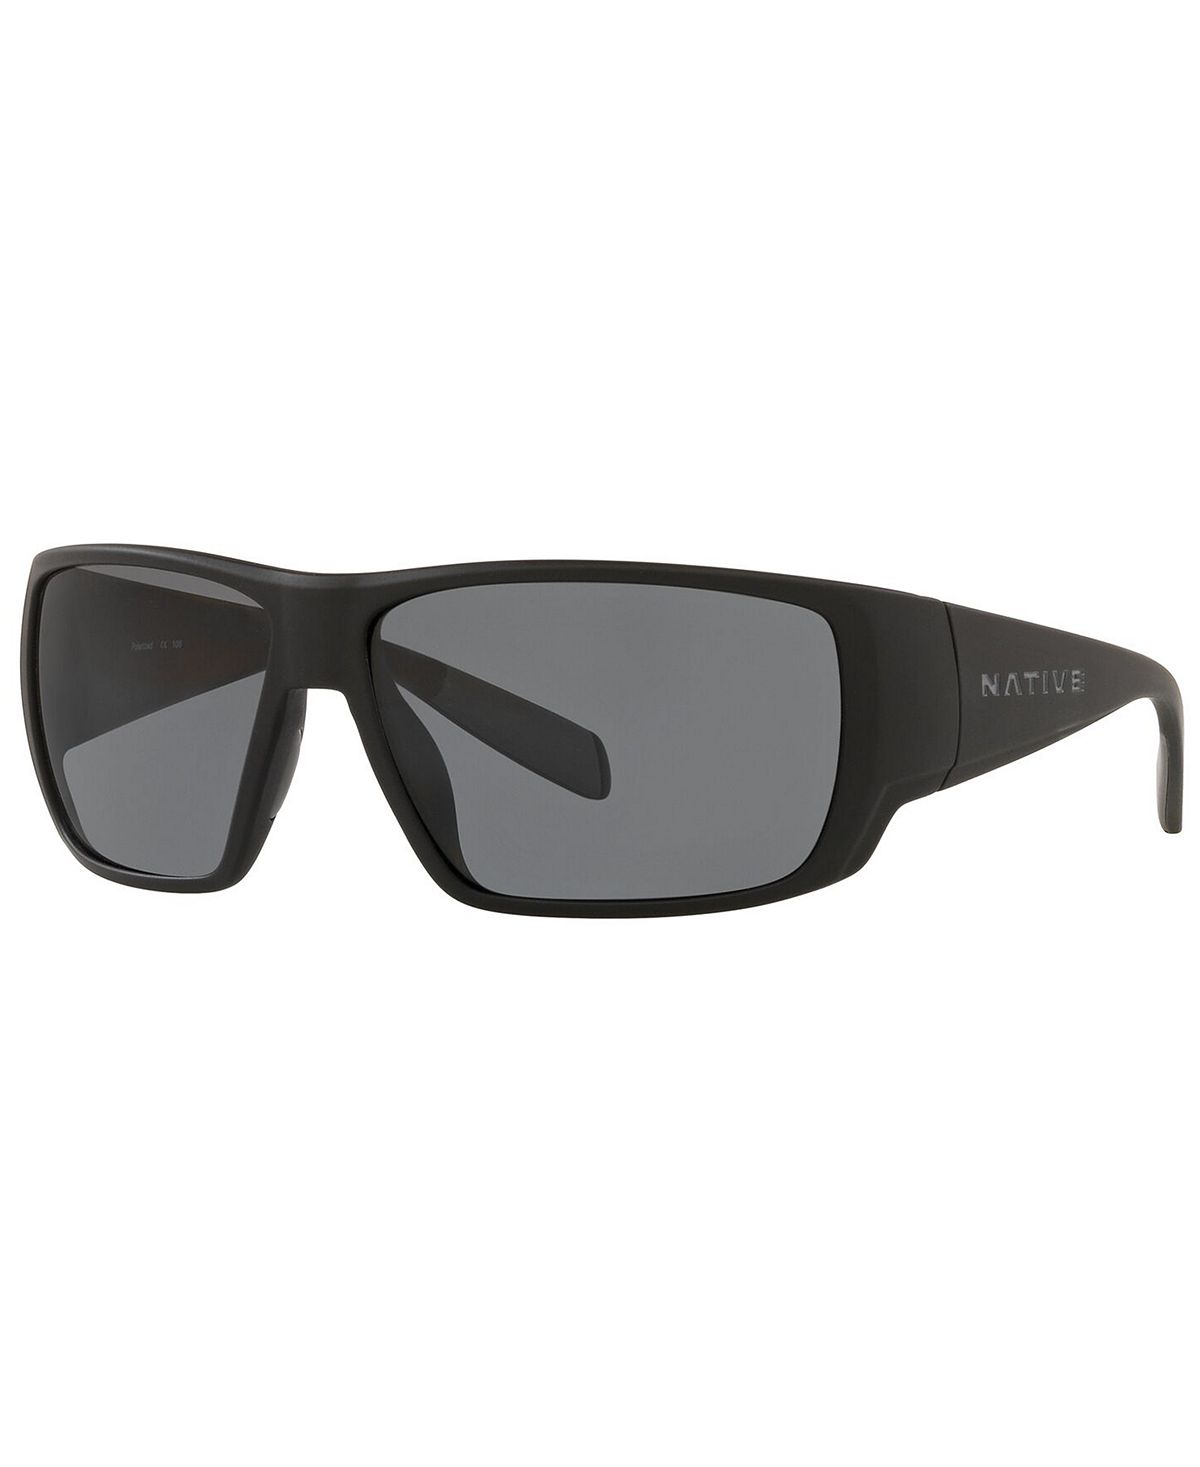 Мужские поляризованные солнцезащитные очки native, xd0061 64 Native Eyewear, мульти